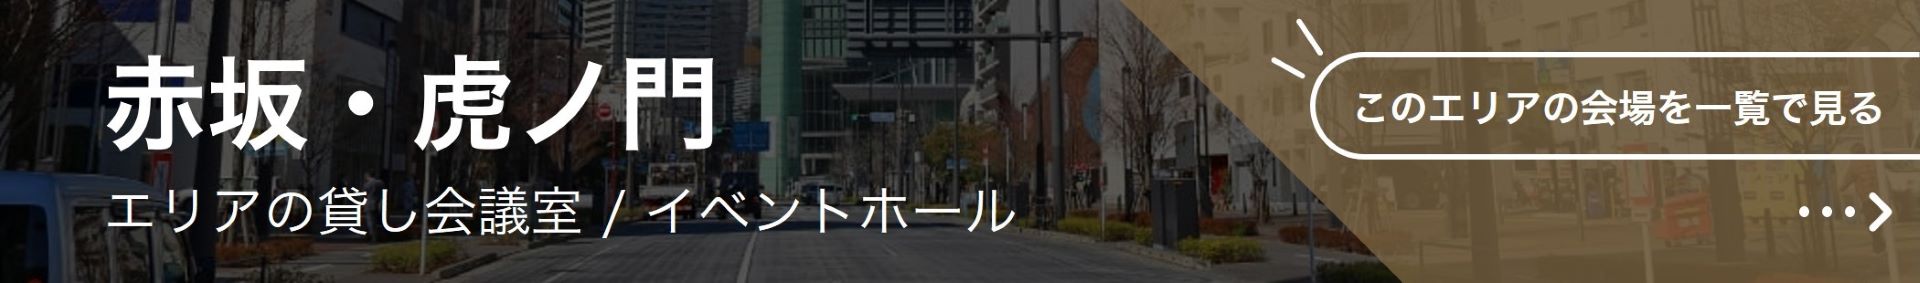 赤坂・虎ノ門エリアでWEB会議・オンライン会議ができる貸し会議室